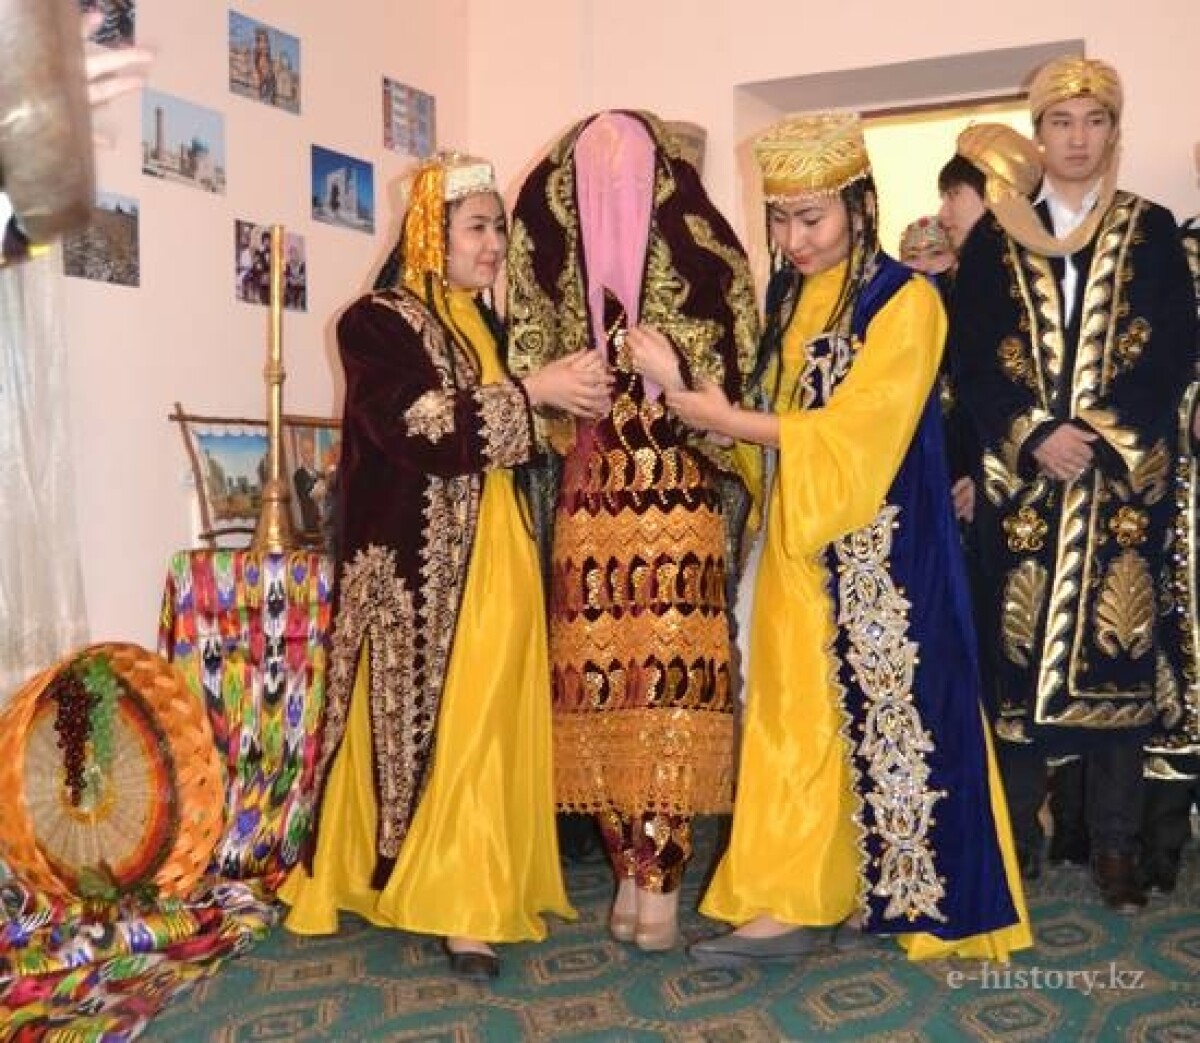 Festival of national cultures - e-history.kz